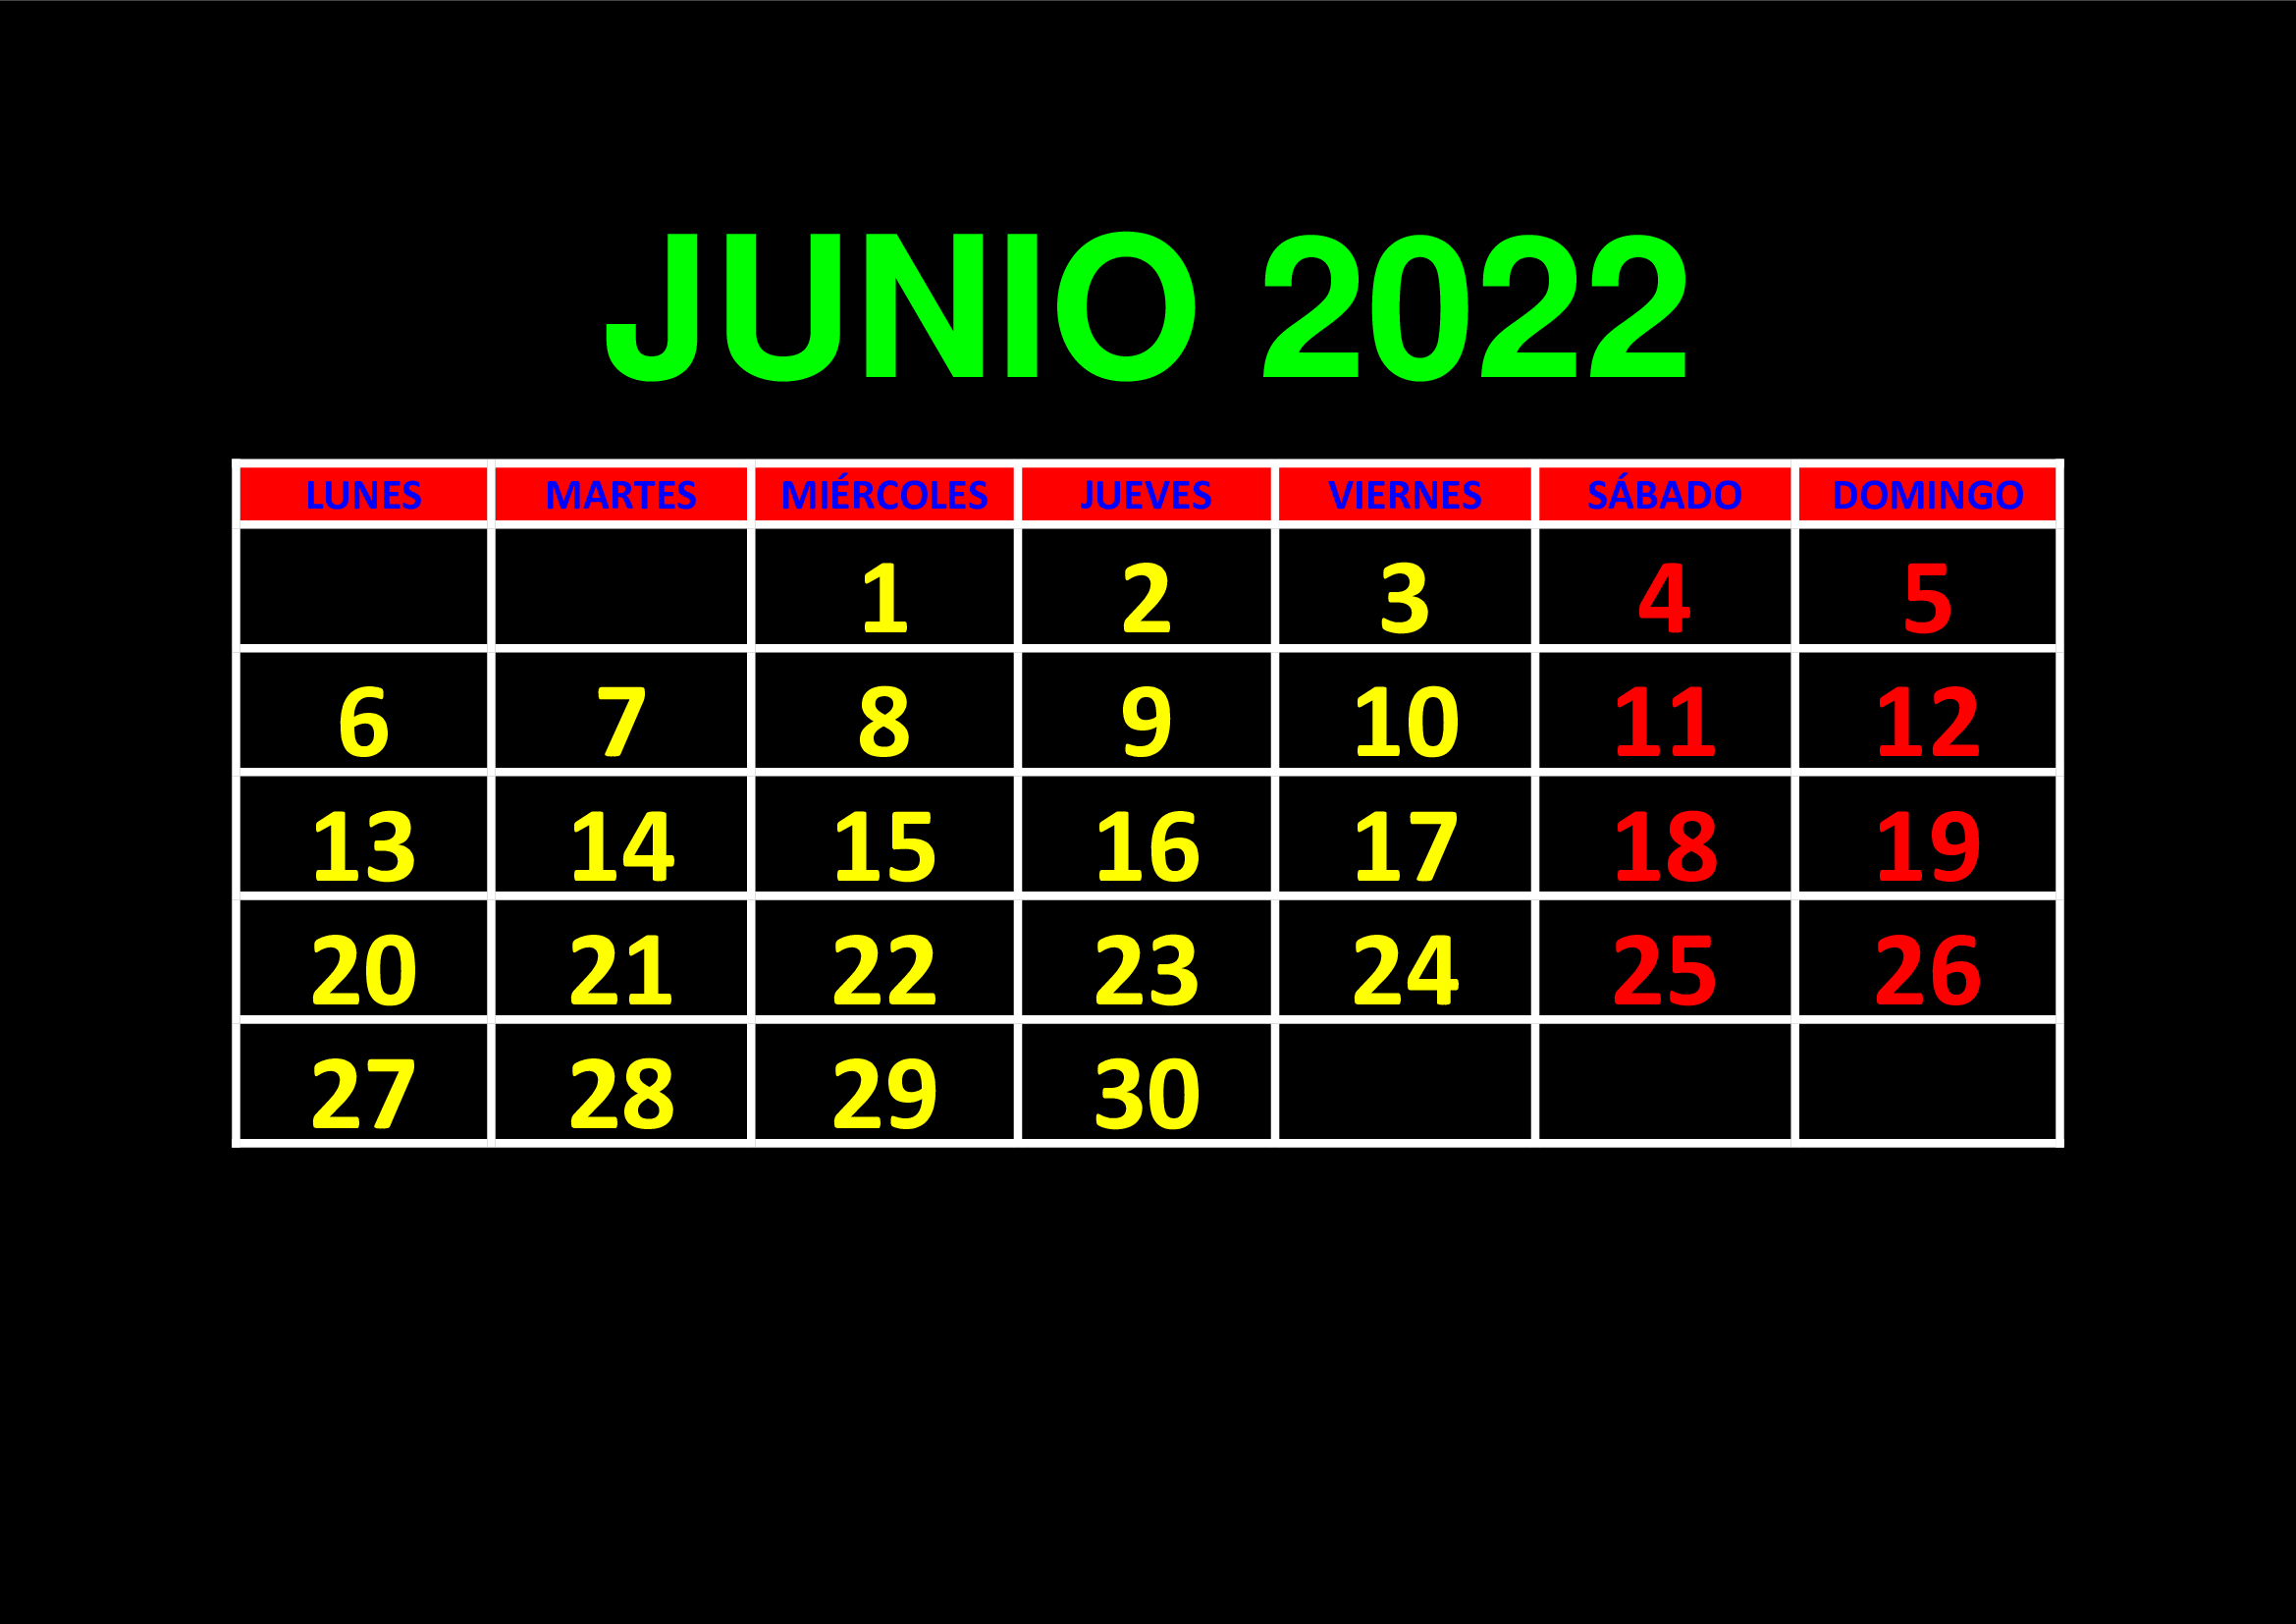 La imagen muestra el mes de junio de 2022